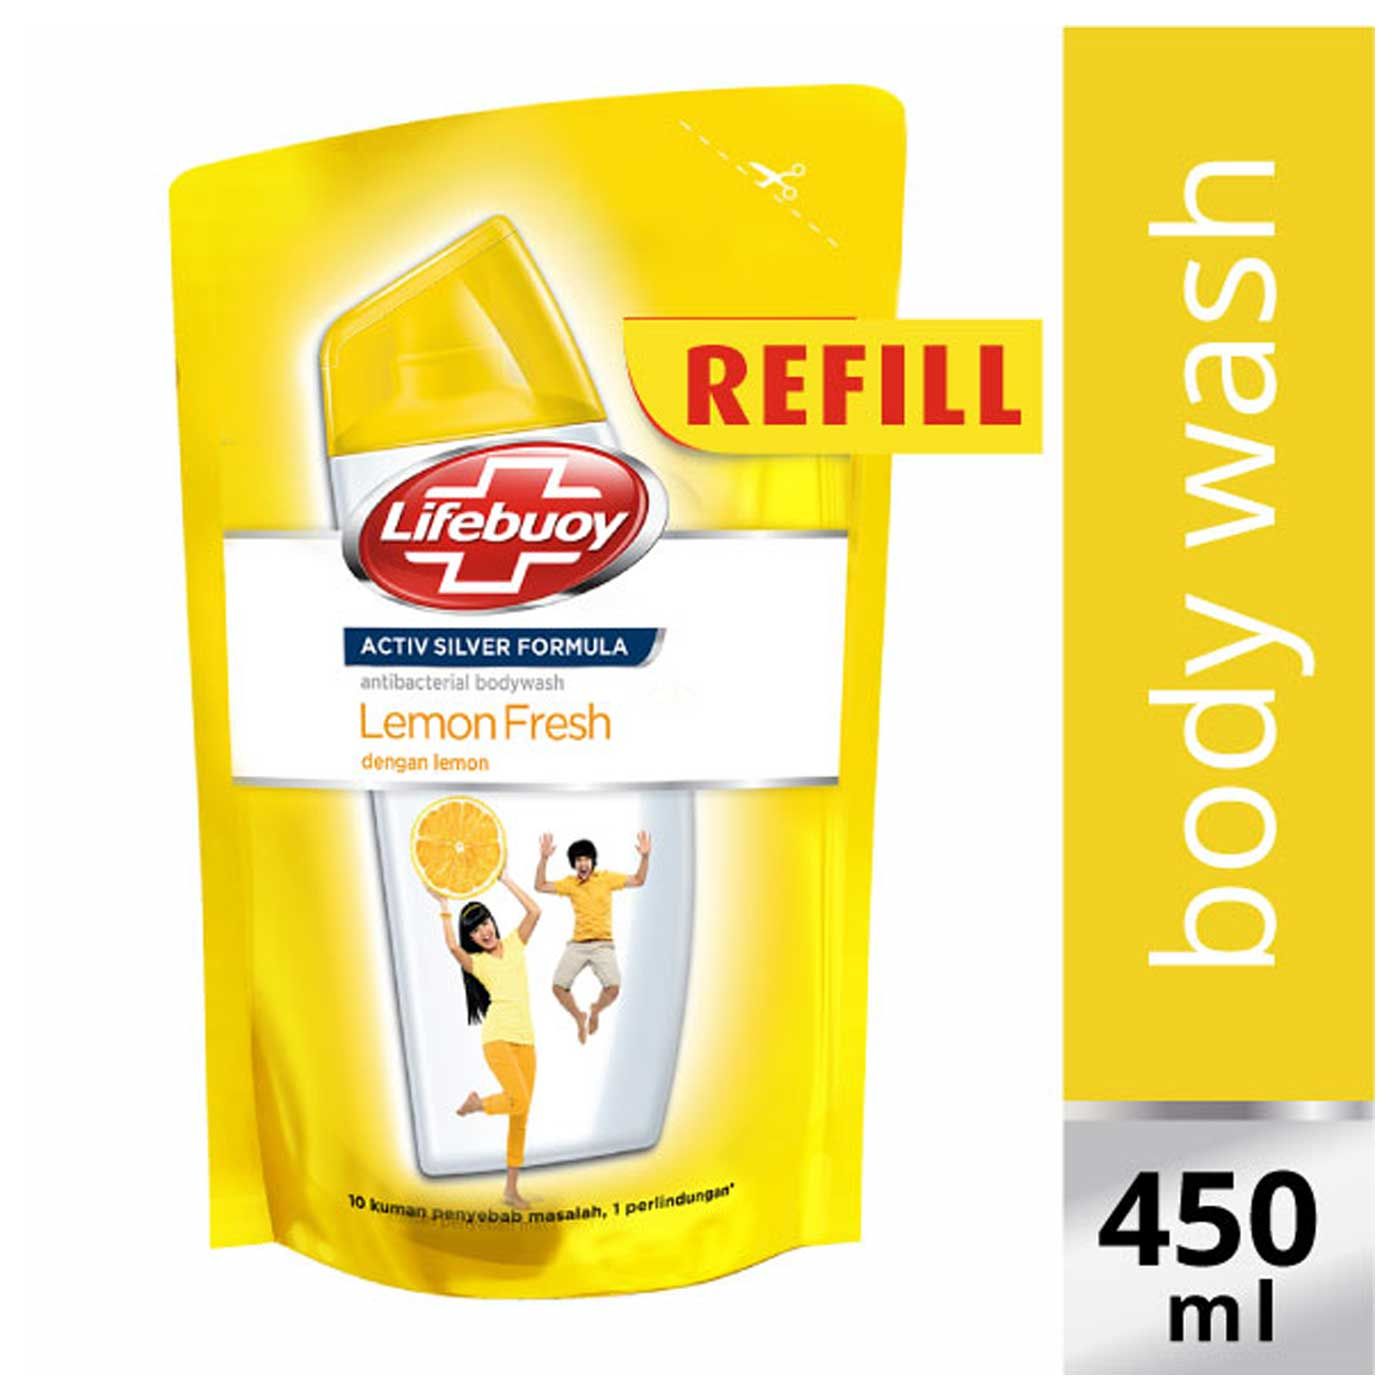 Lifebuoy Sabun Cair Lemon Fresh Refill 450ml - 1